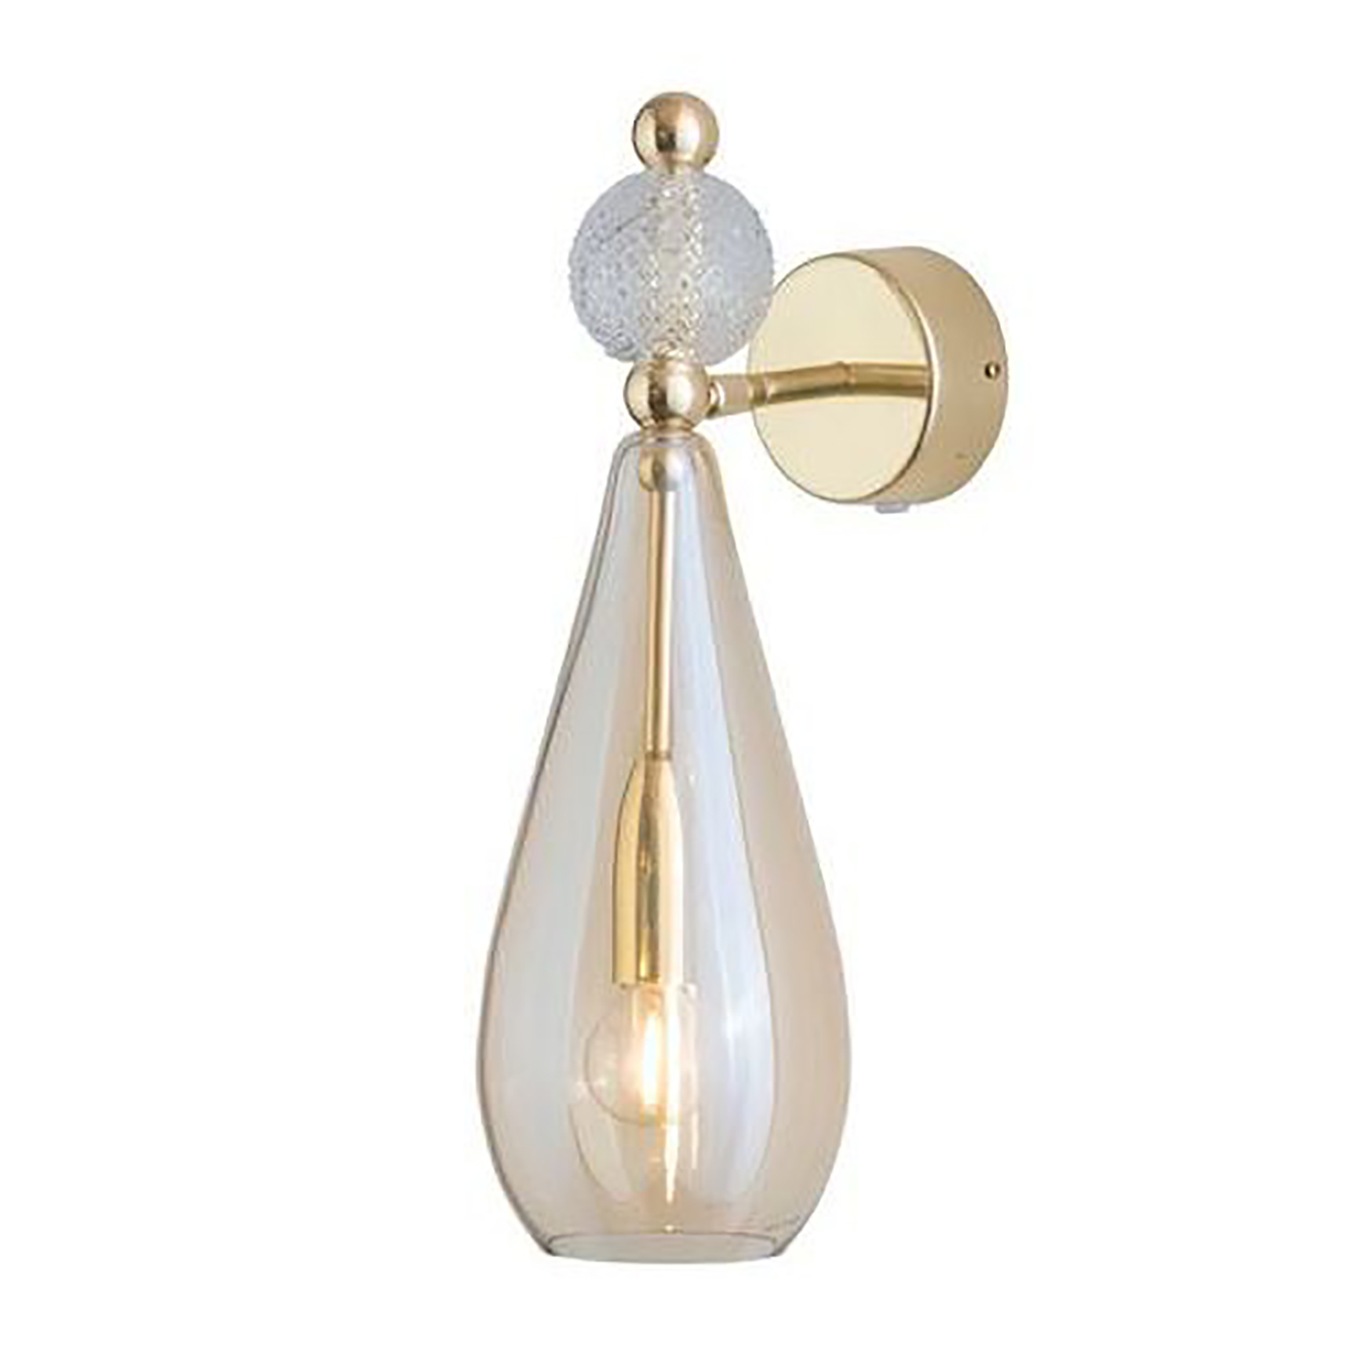 Smykke Væglampe, Golden Smoke / Crystal Check Ball / Shiny Gold